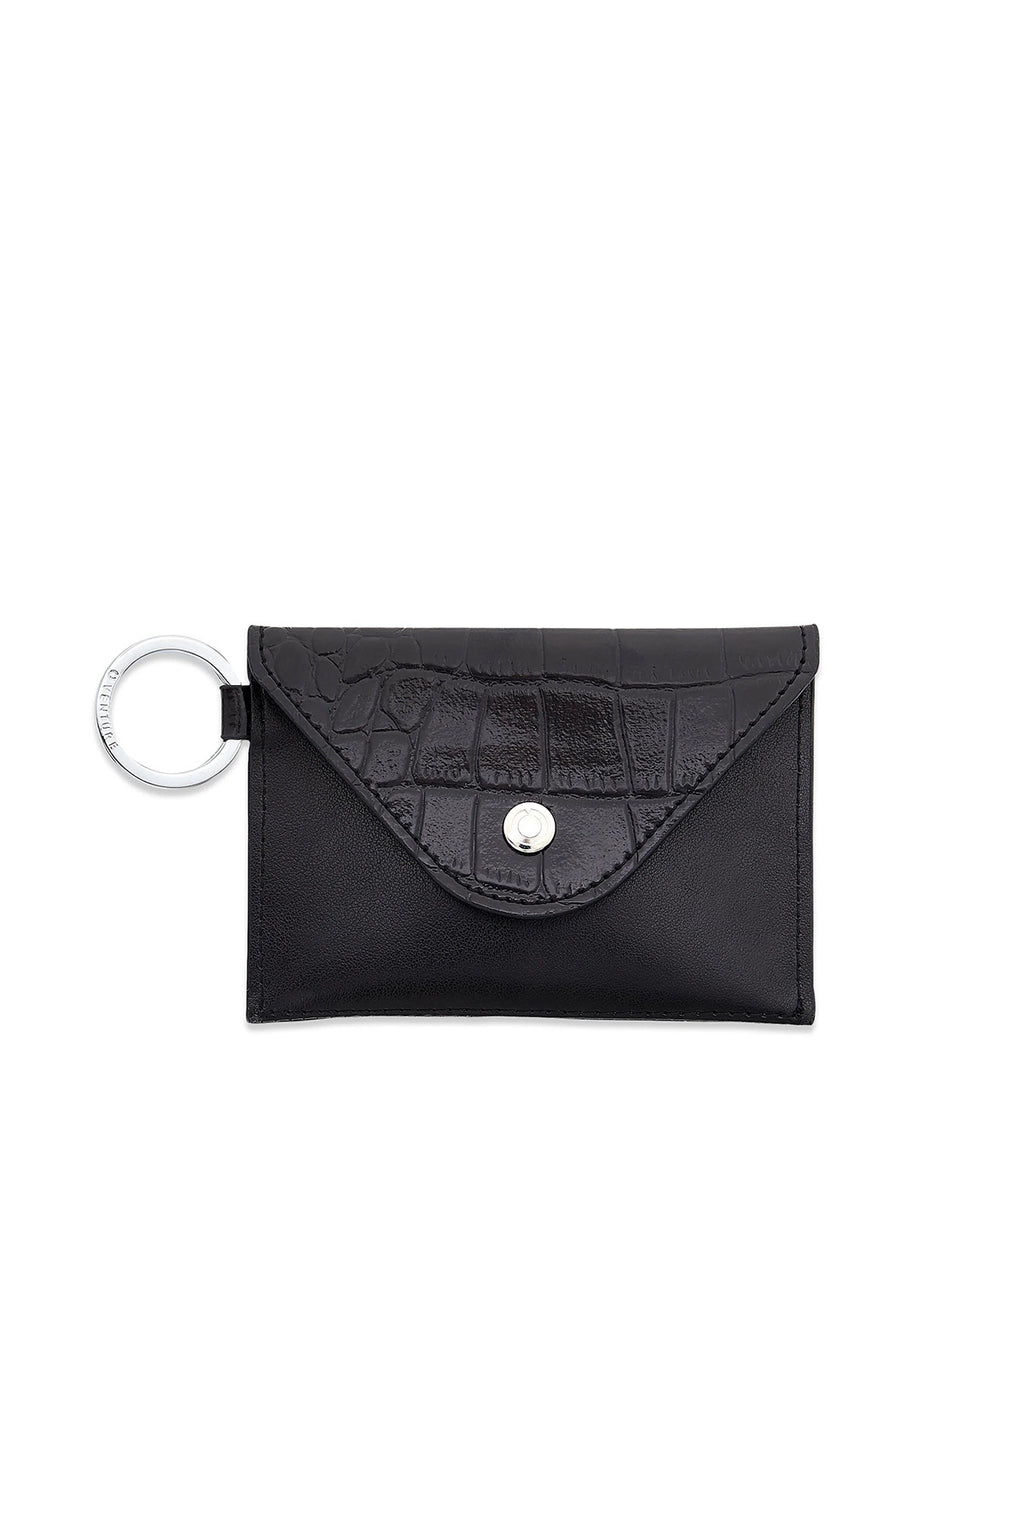 Mini Envelope - Back in Black